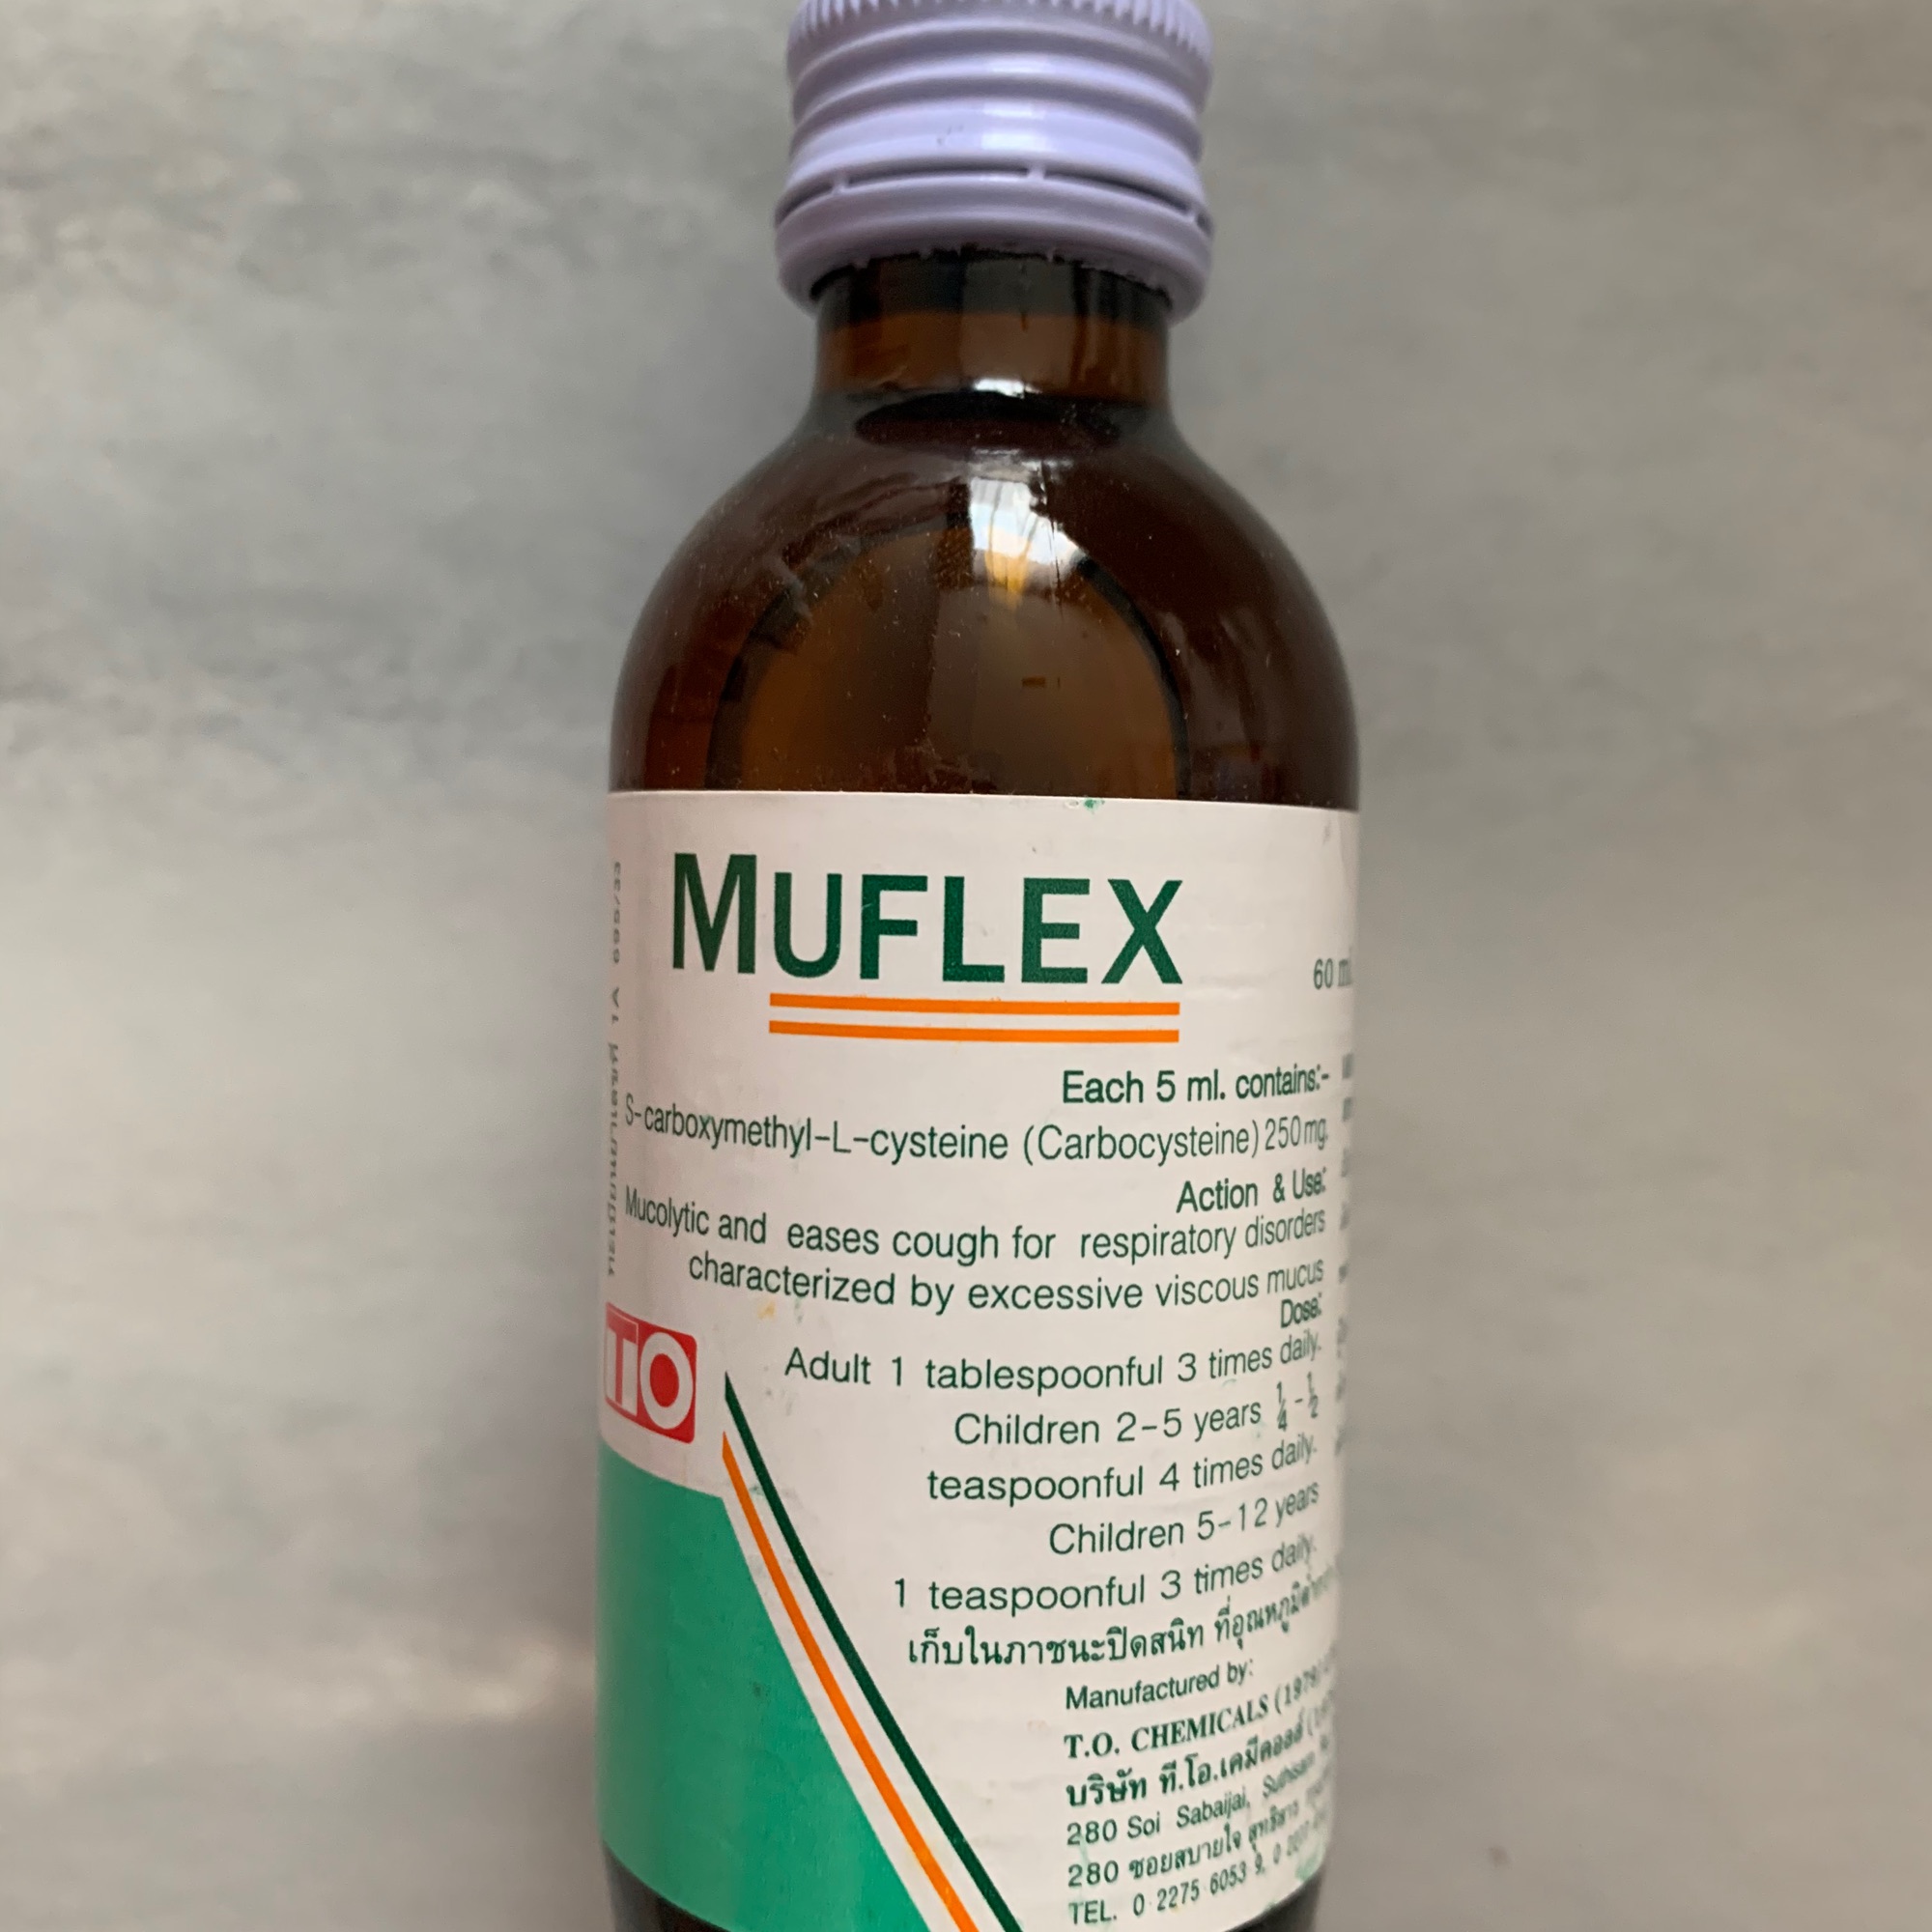 Muflex ชนิดน้ำ ละลายเสมหะแก้ไอ ทานง่าย สามารถใช้ได้ในสั